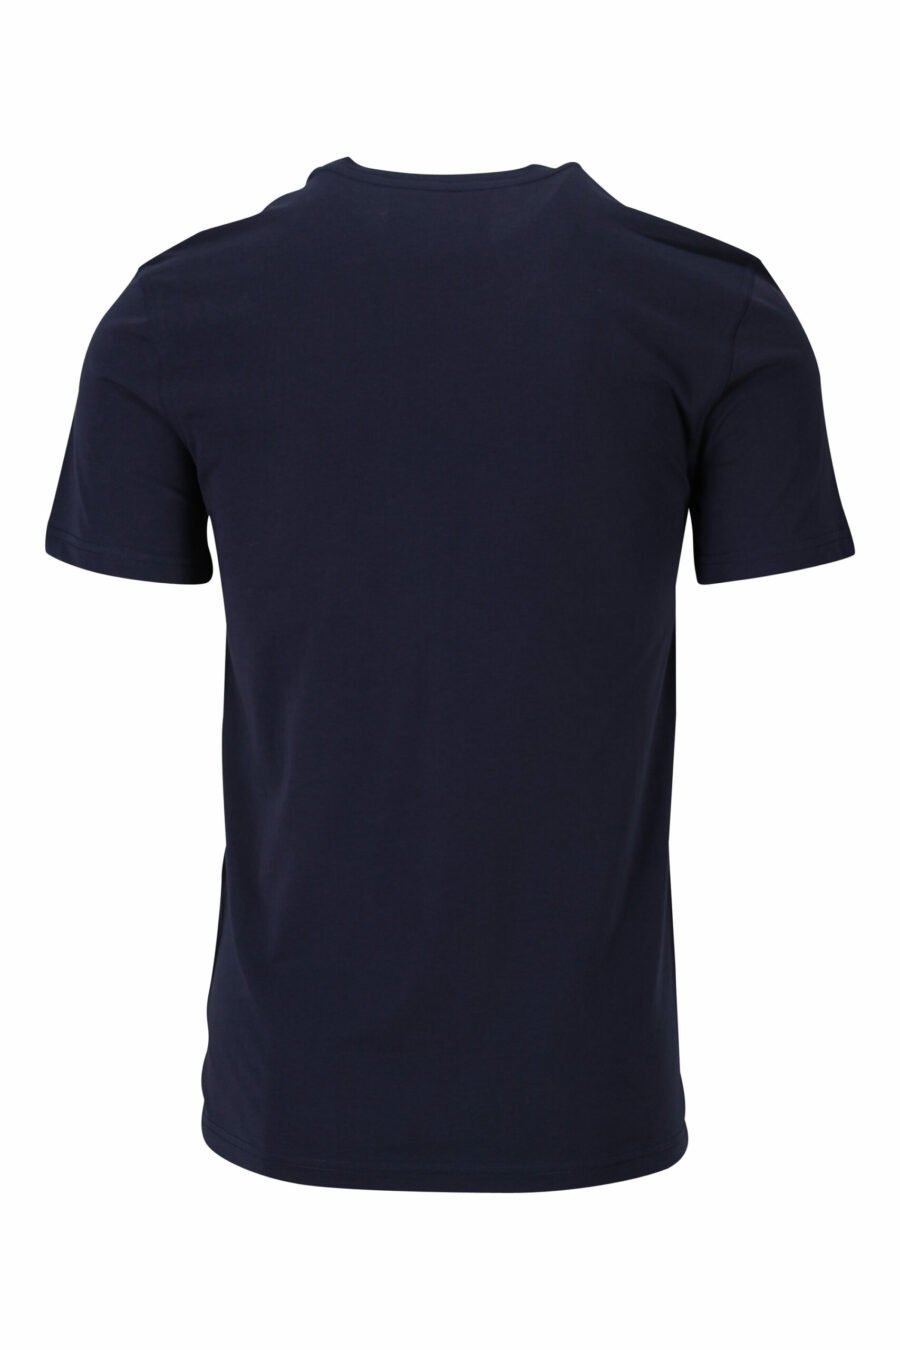 Camiseta azul oscura con maxilogo "teddy" sastre - 667113124827 1 scaled